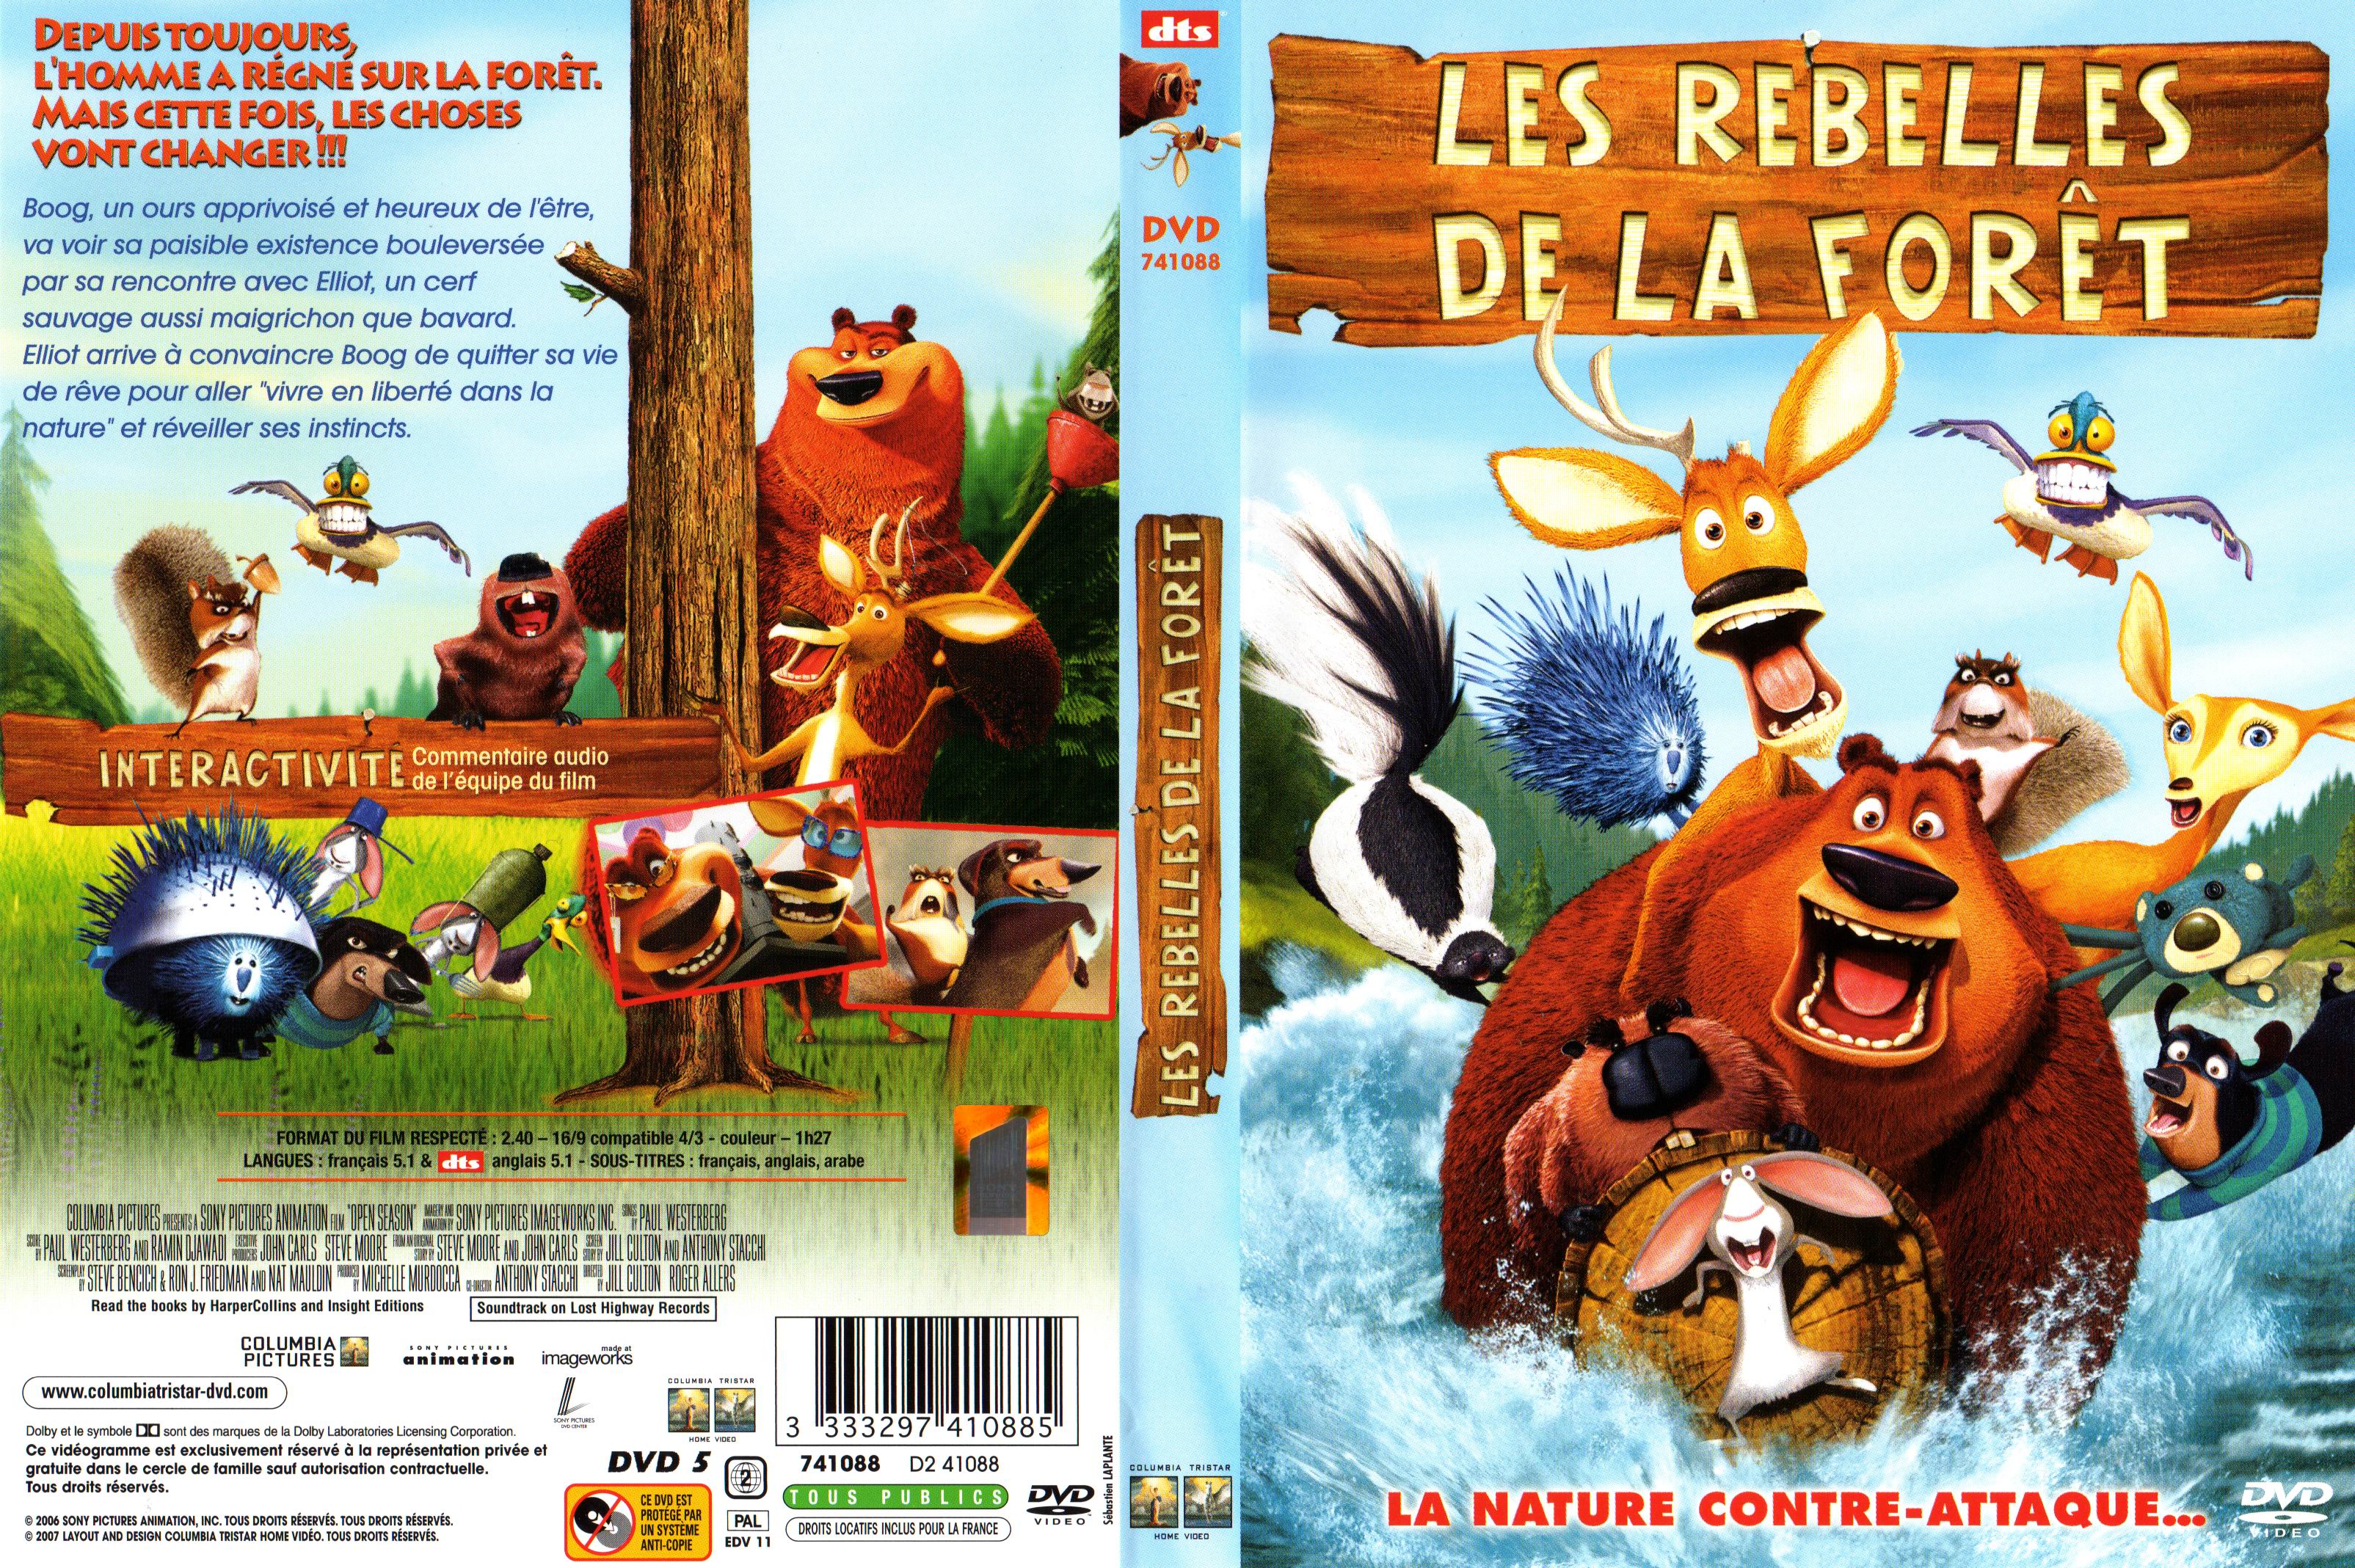 Jaquette DVD Les rebelles de la foret